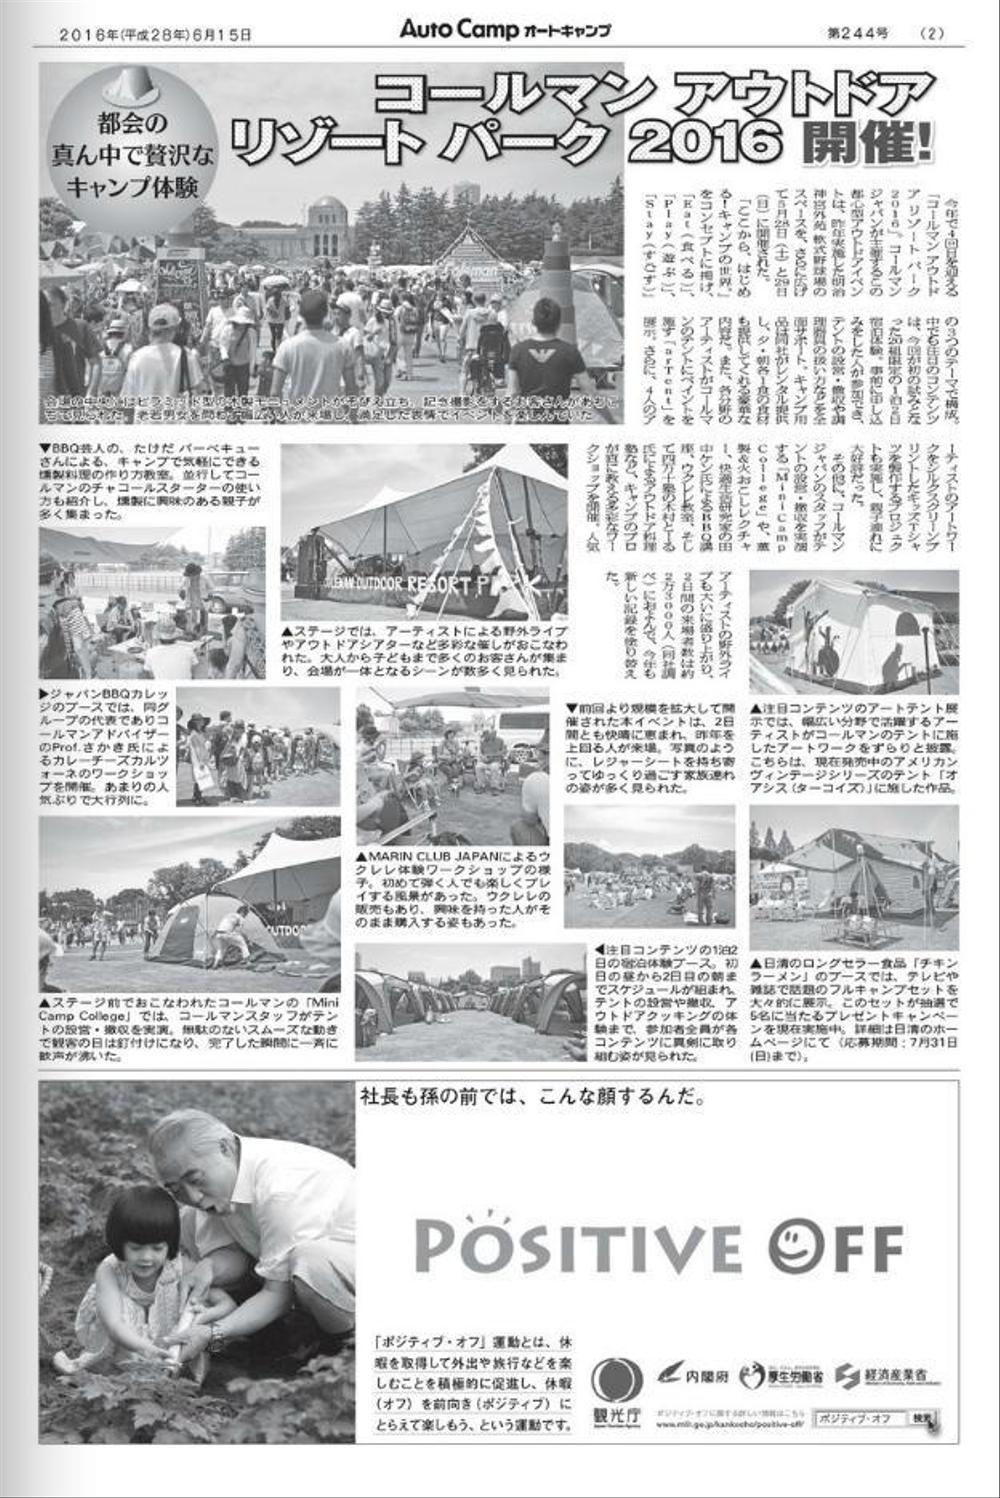 キャンプ専門広報誌『月刊オートキャンプ』6月号 記事作成